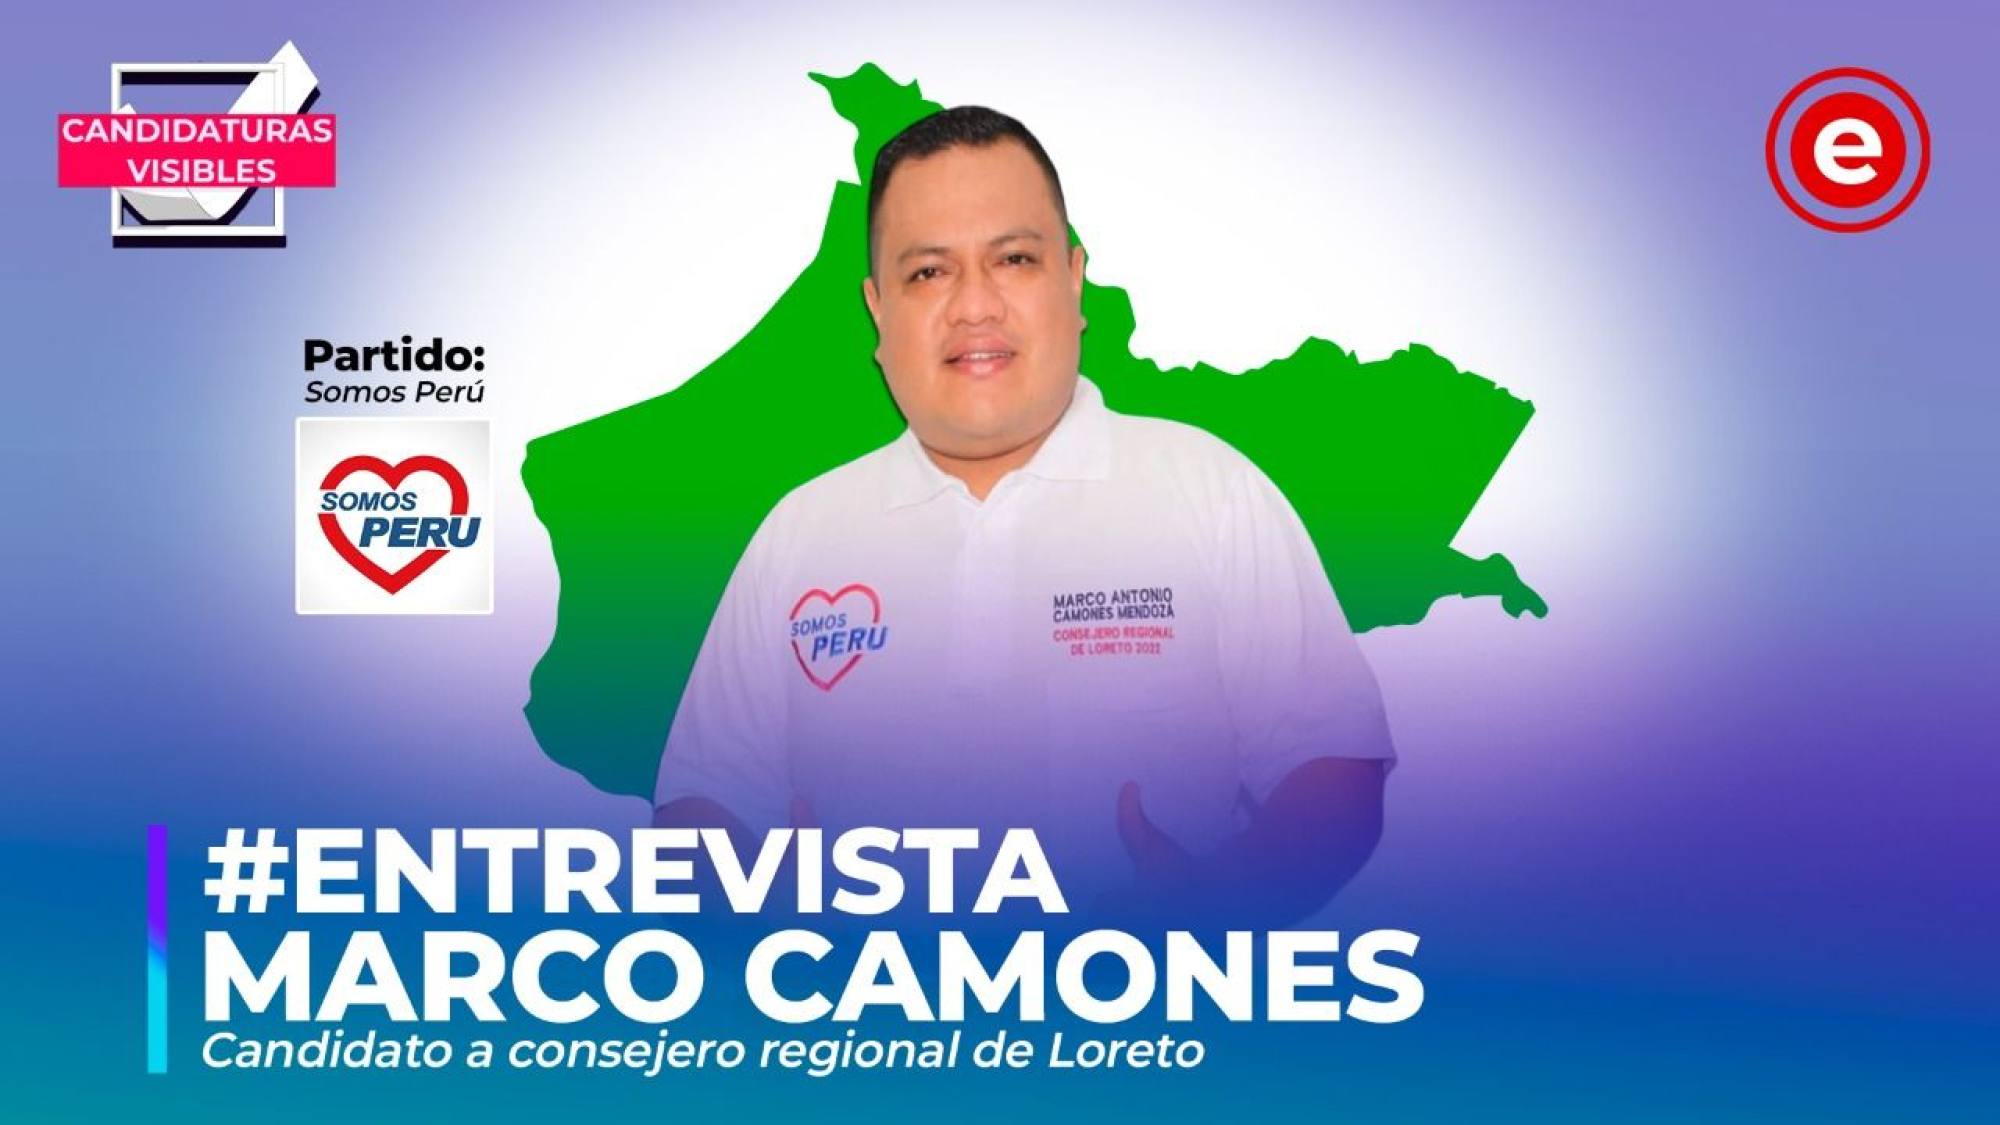 Candidaturas Visibles | Marco Camones, candidato a consejero regional de Loreto por Somos Perú, Epicentro TV